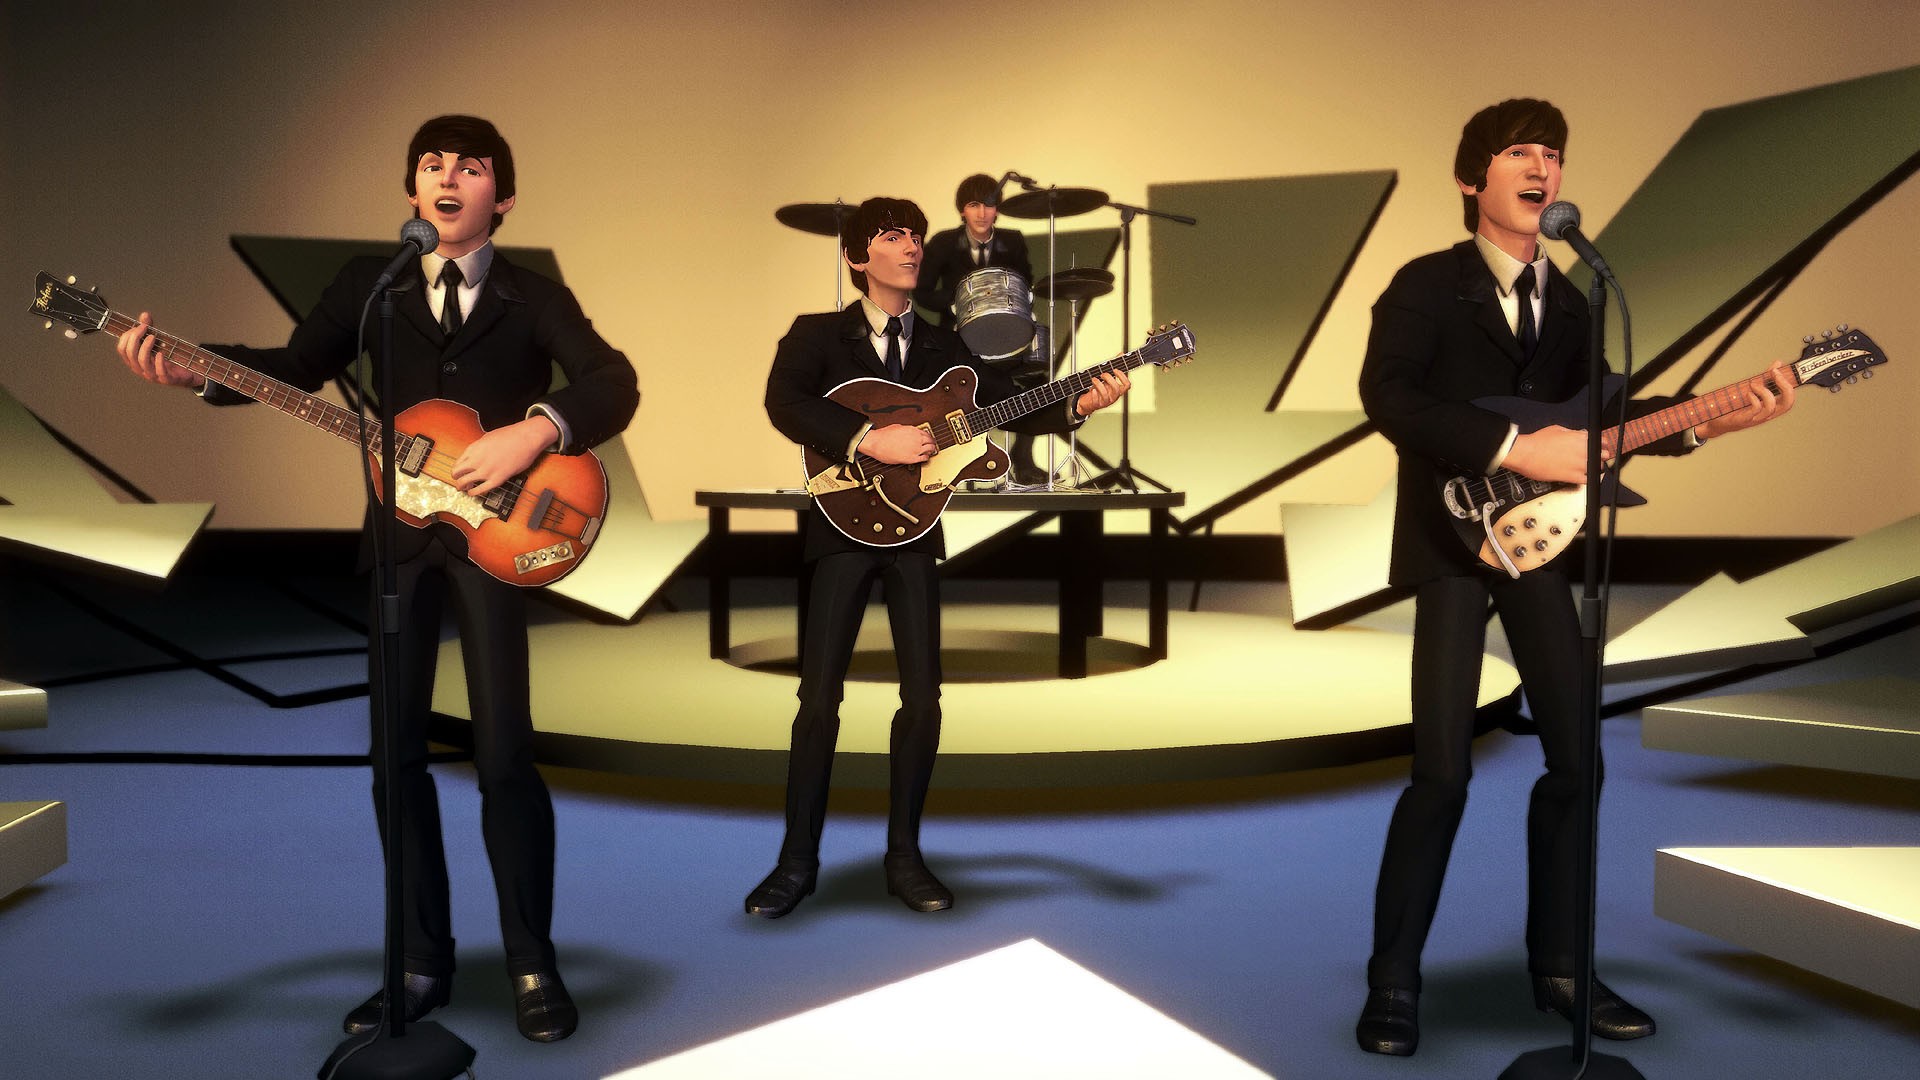 General 1920x1080 The Beatles music artwork CGI